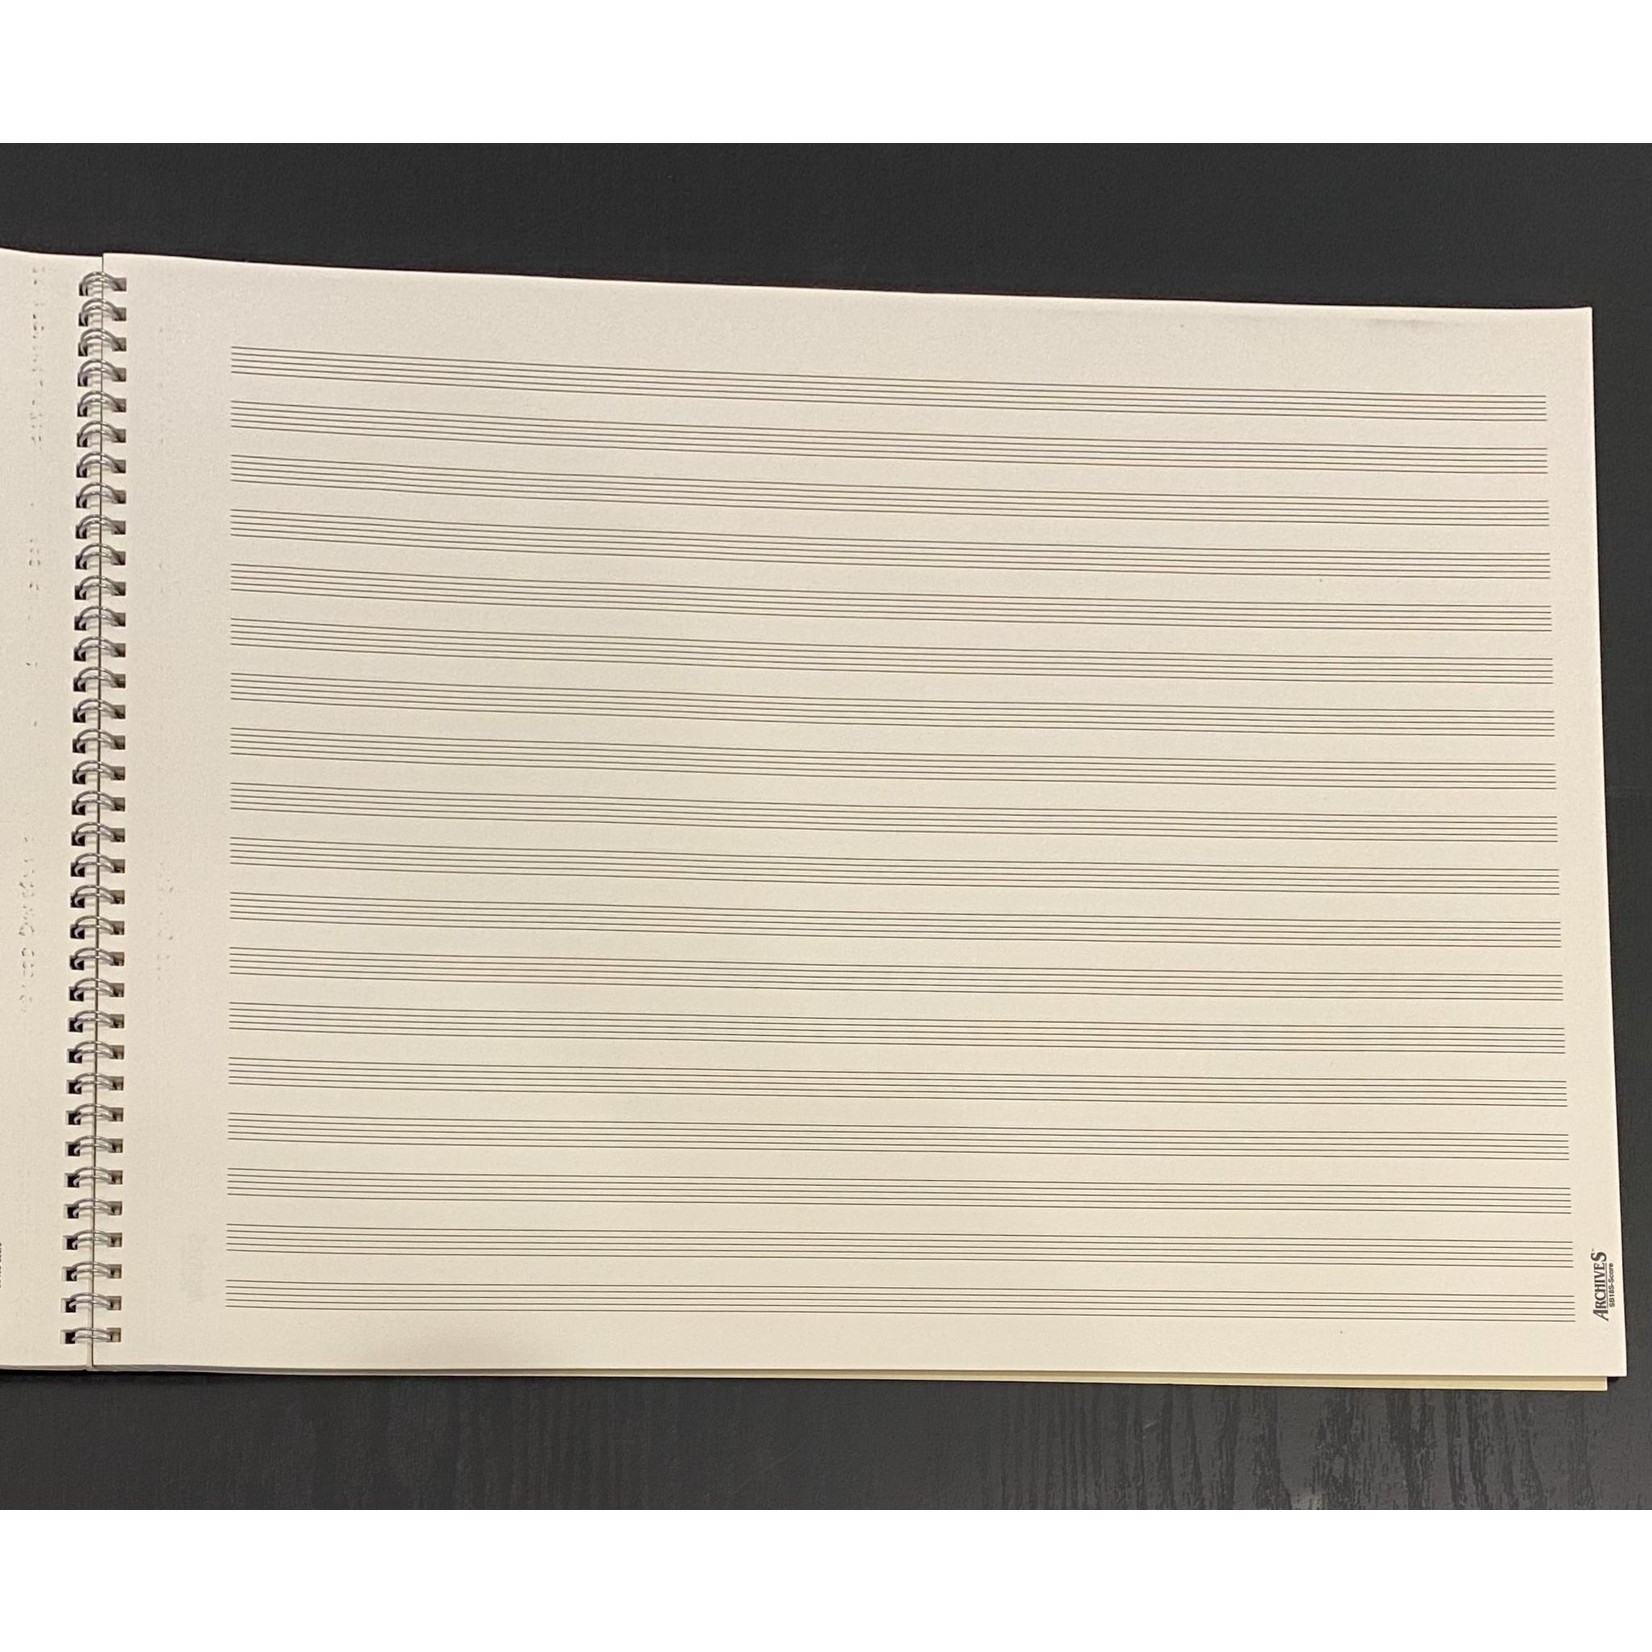 Manuscript: Archives, Landscape Orchestral Pad, 18st/64pg (16"x12")